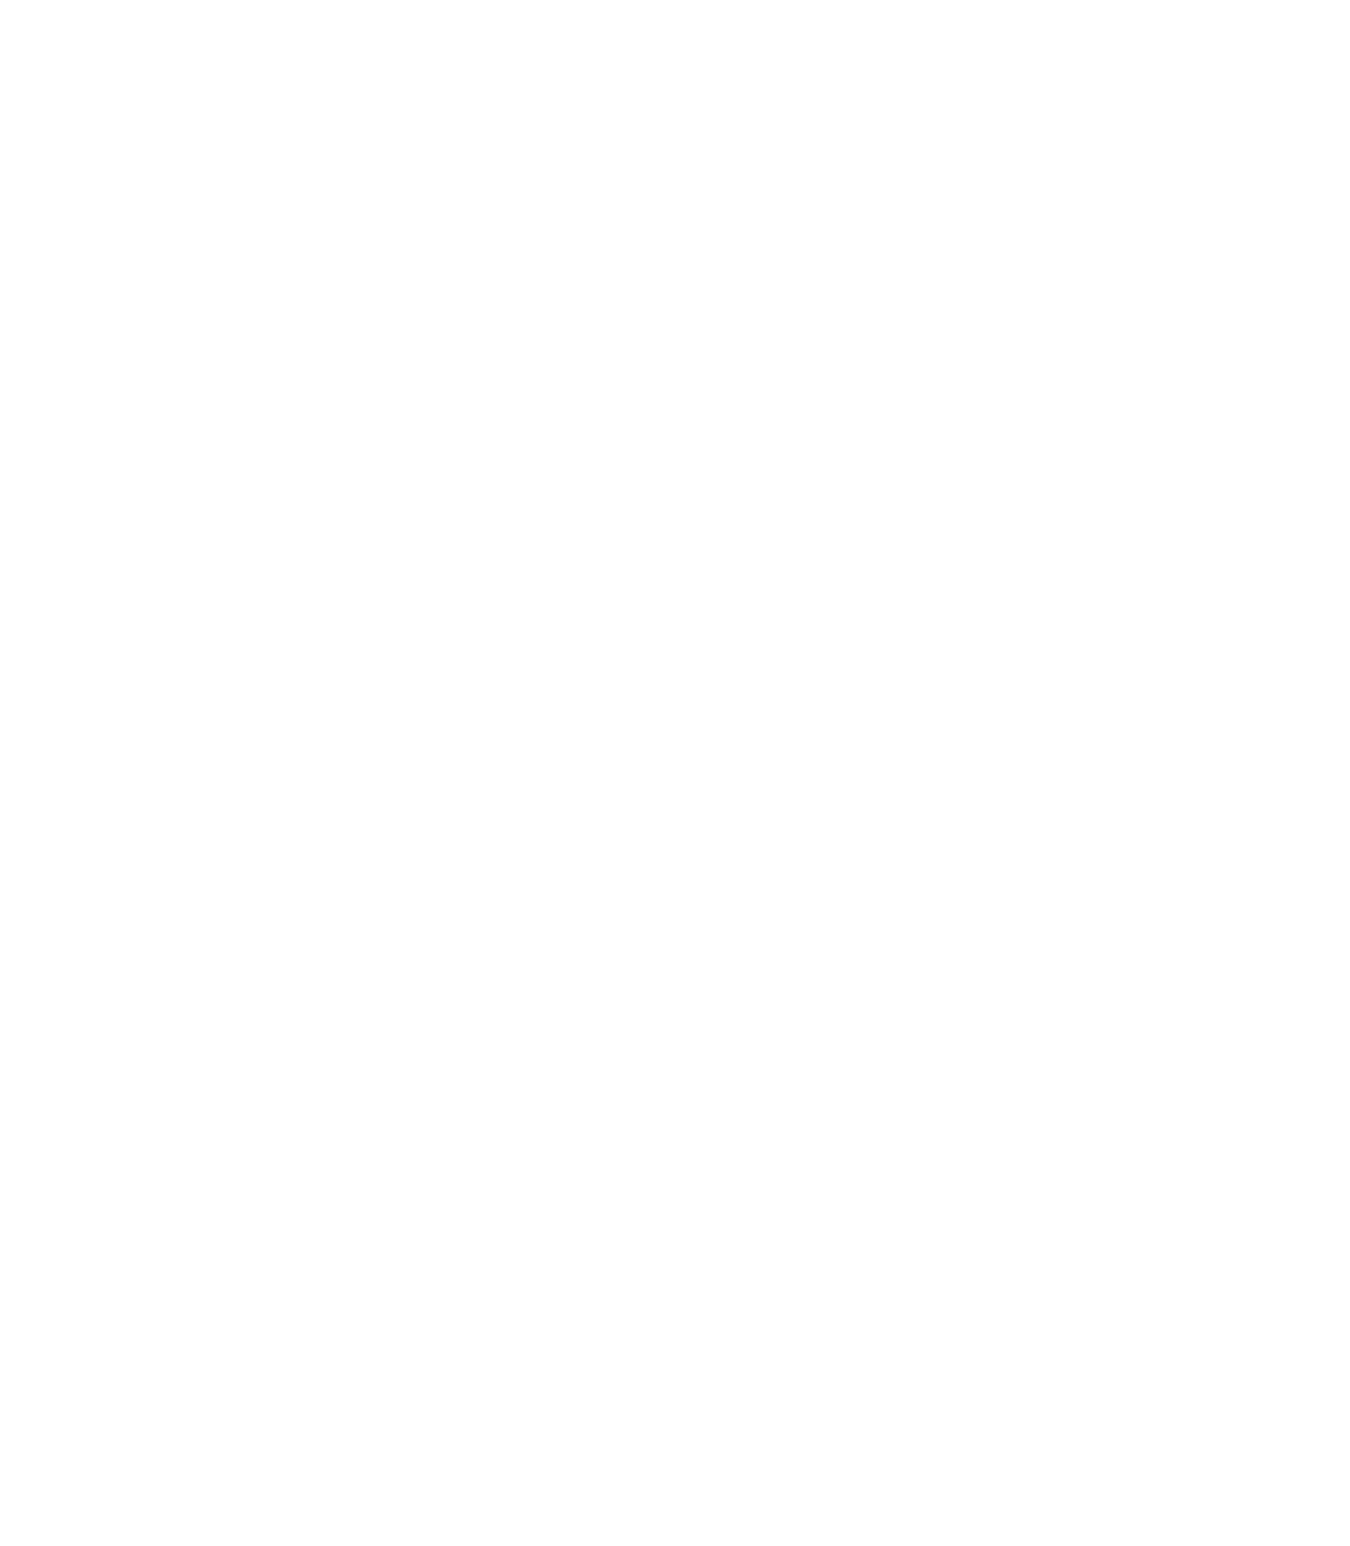 Jet2 logo pour fonds sombres (PNG transparent)